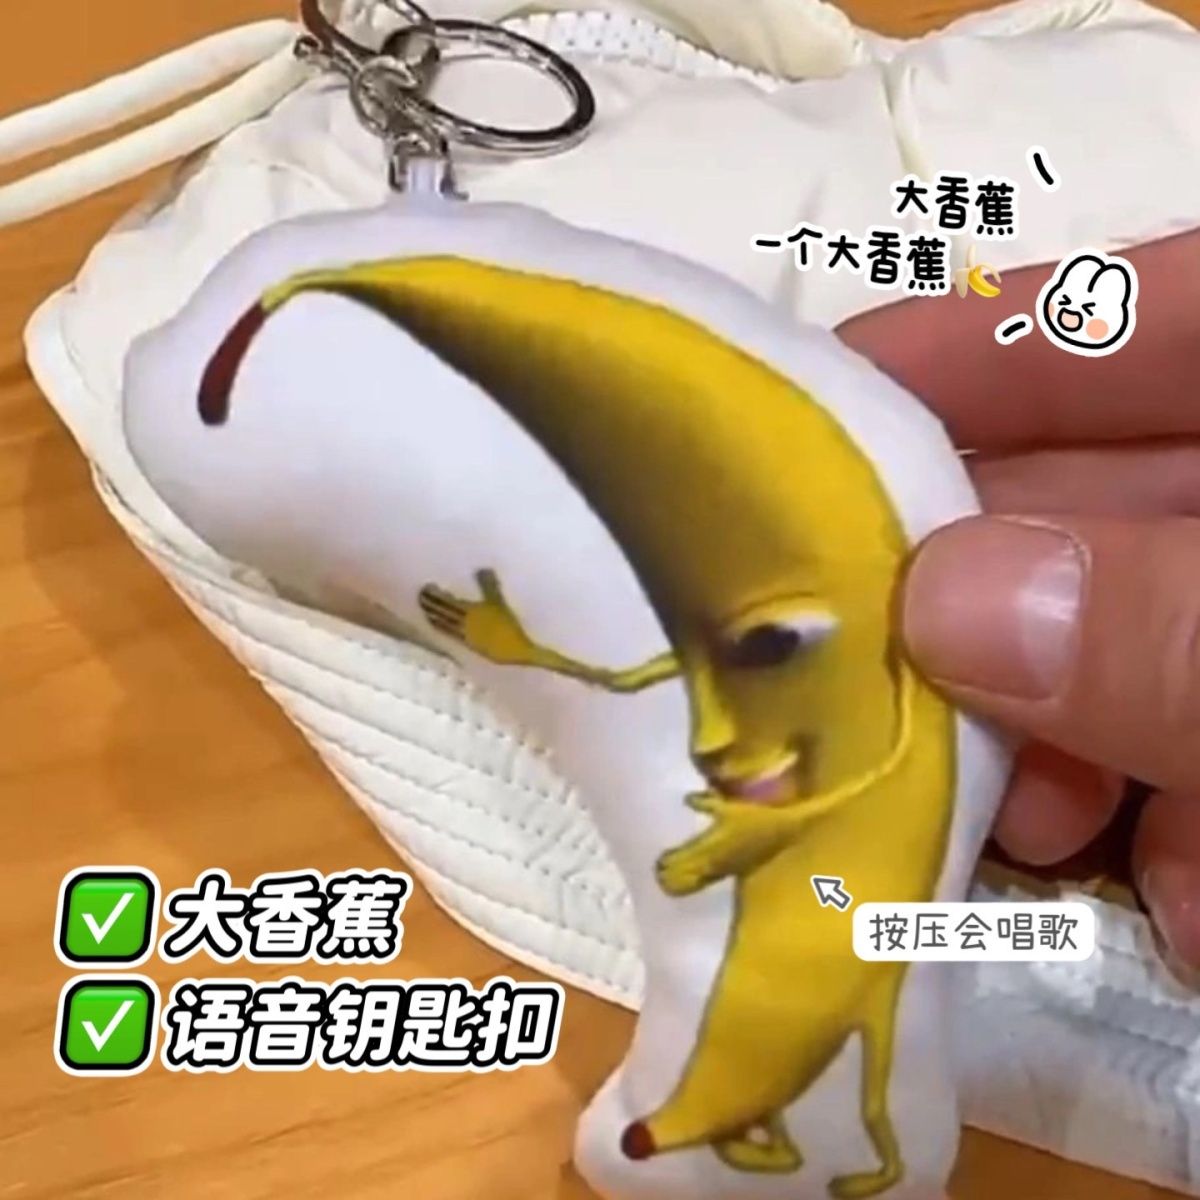 抖音同款一条大香蕉挂件玩偶钥匙扣会唱歌happy猫meme玩具鬼畜